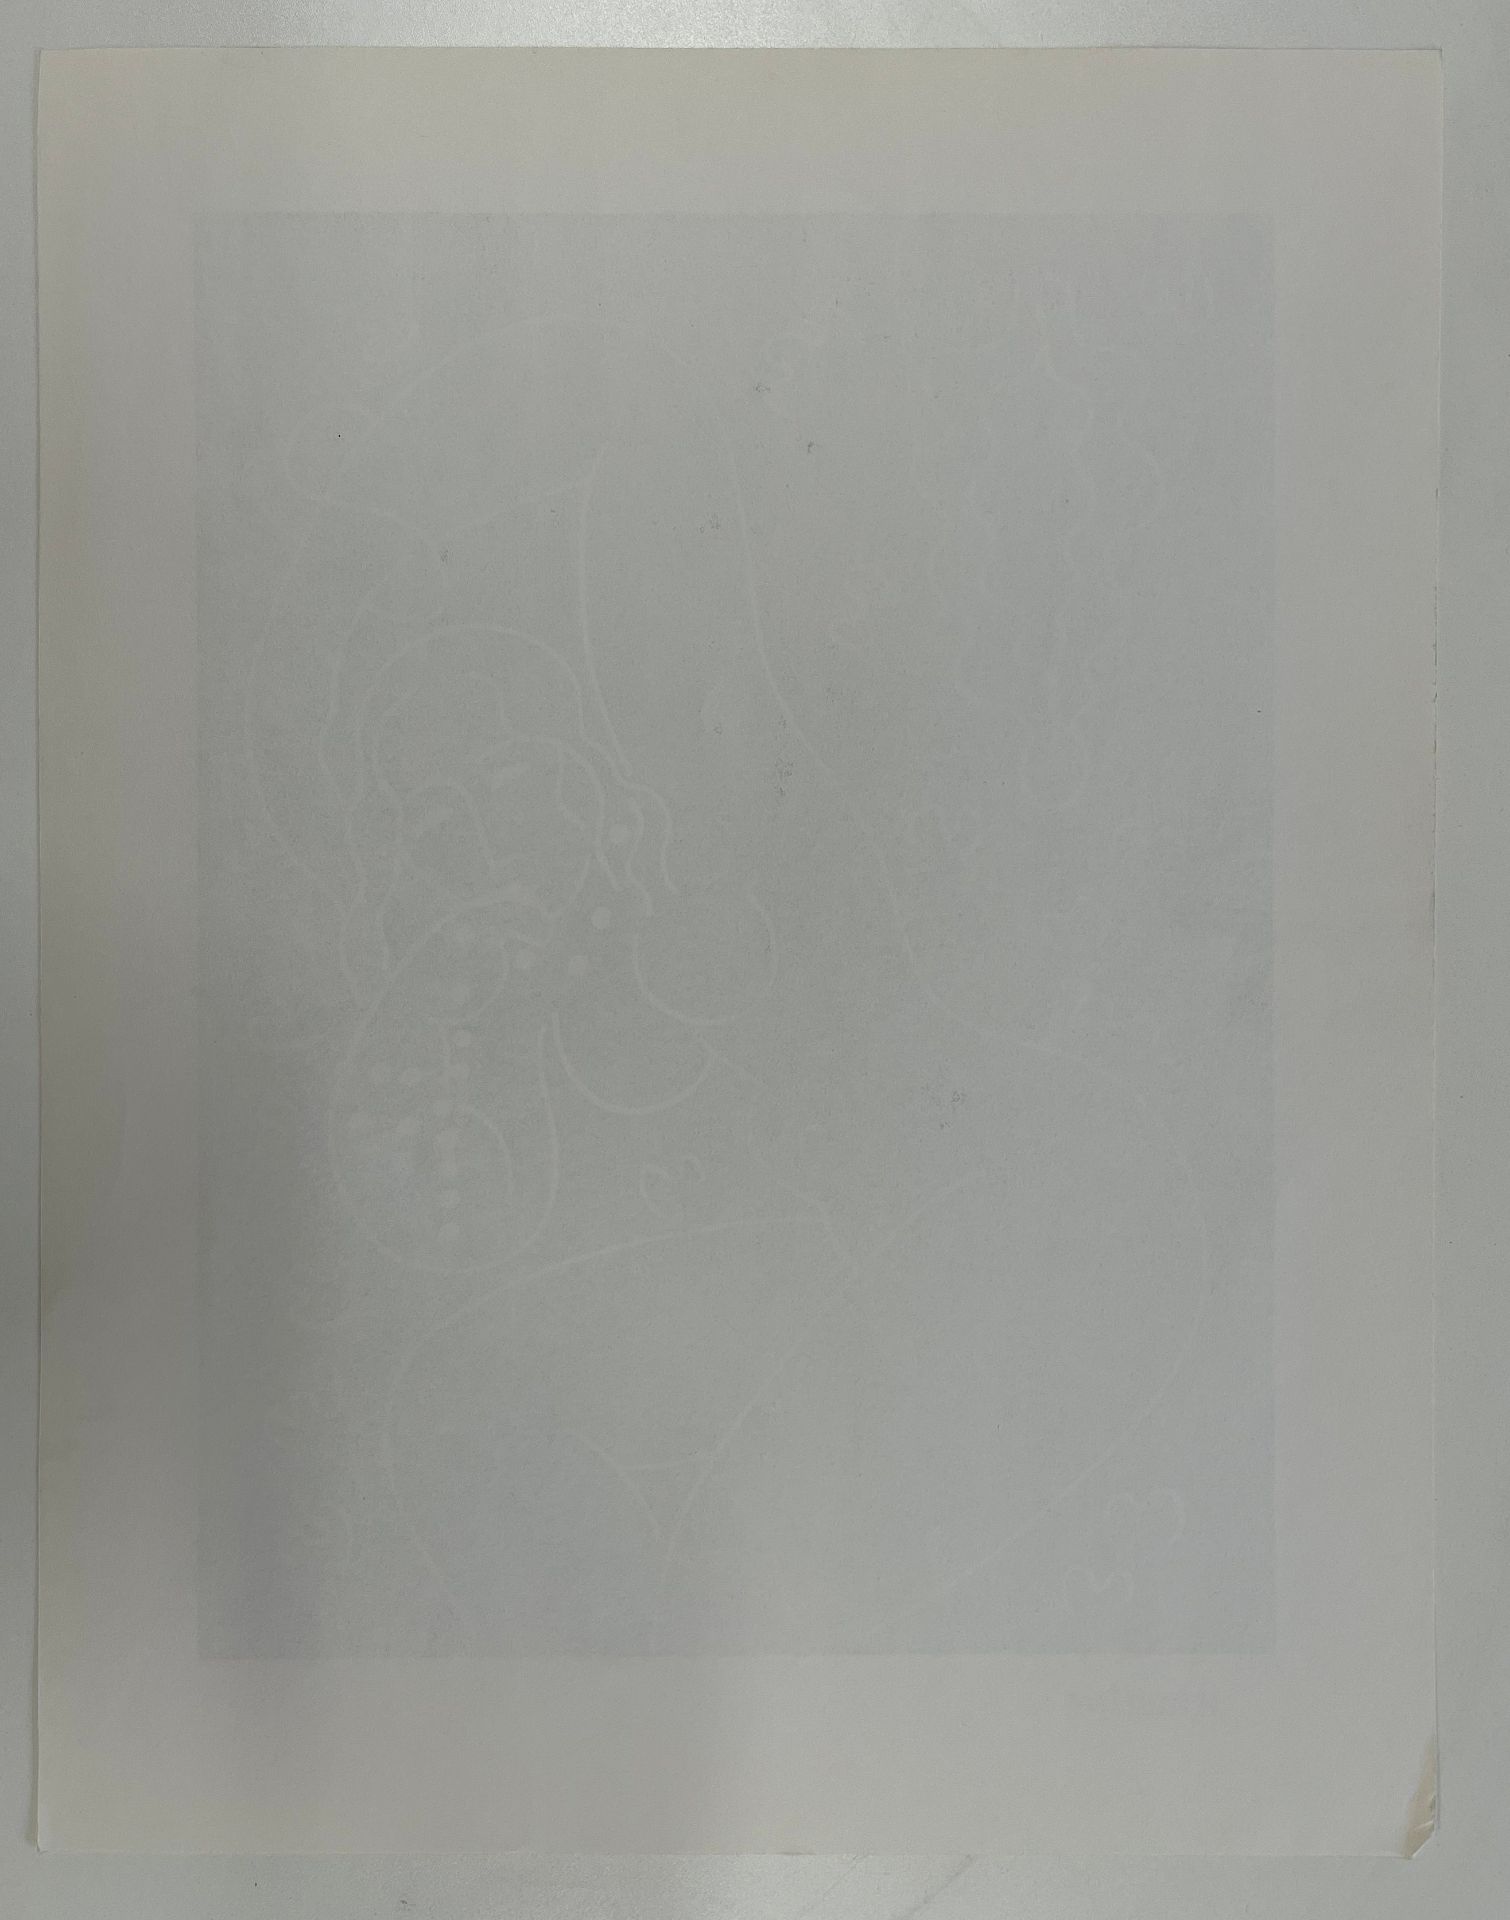 SEVEN VINTAGE LITHOGRAPHS ON PAPER AFTER HENRI MATISSE - Image 12 of 22